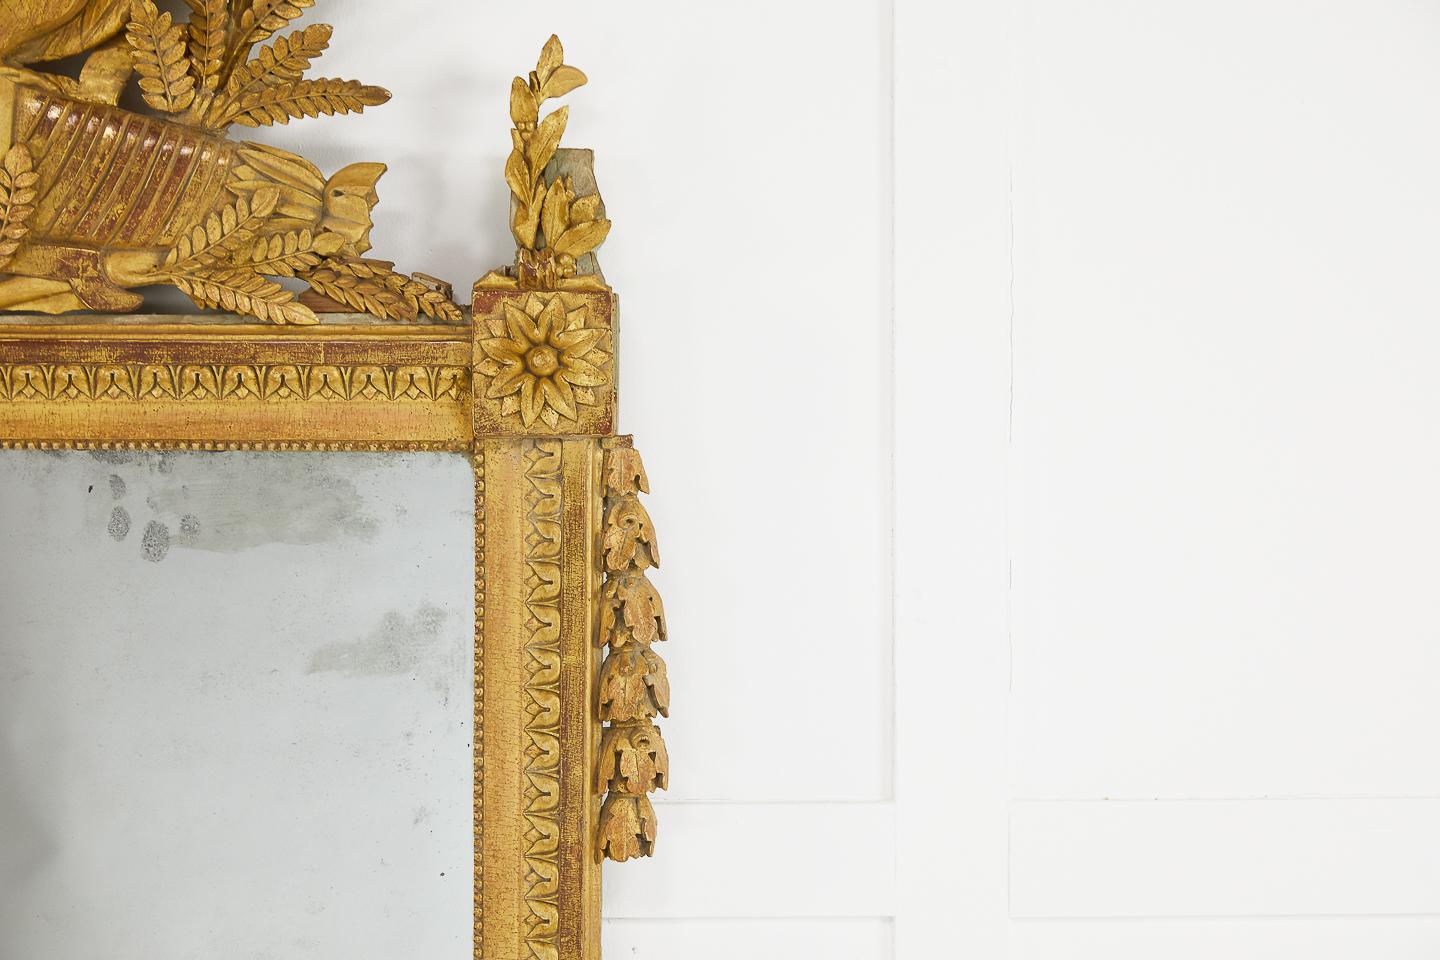 miroir doré français du XVIIIe siècle avec colombes et feuillages sculptés, conservant sa belle dorure d'origine délavée.
 